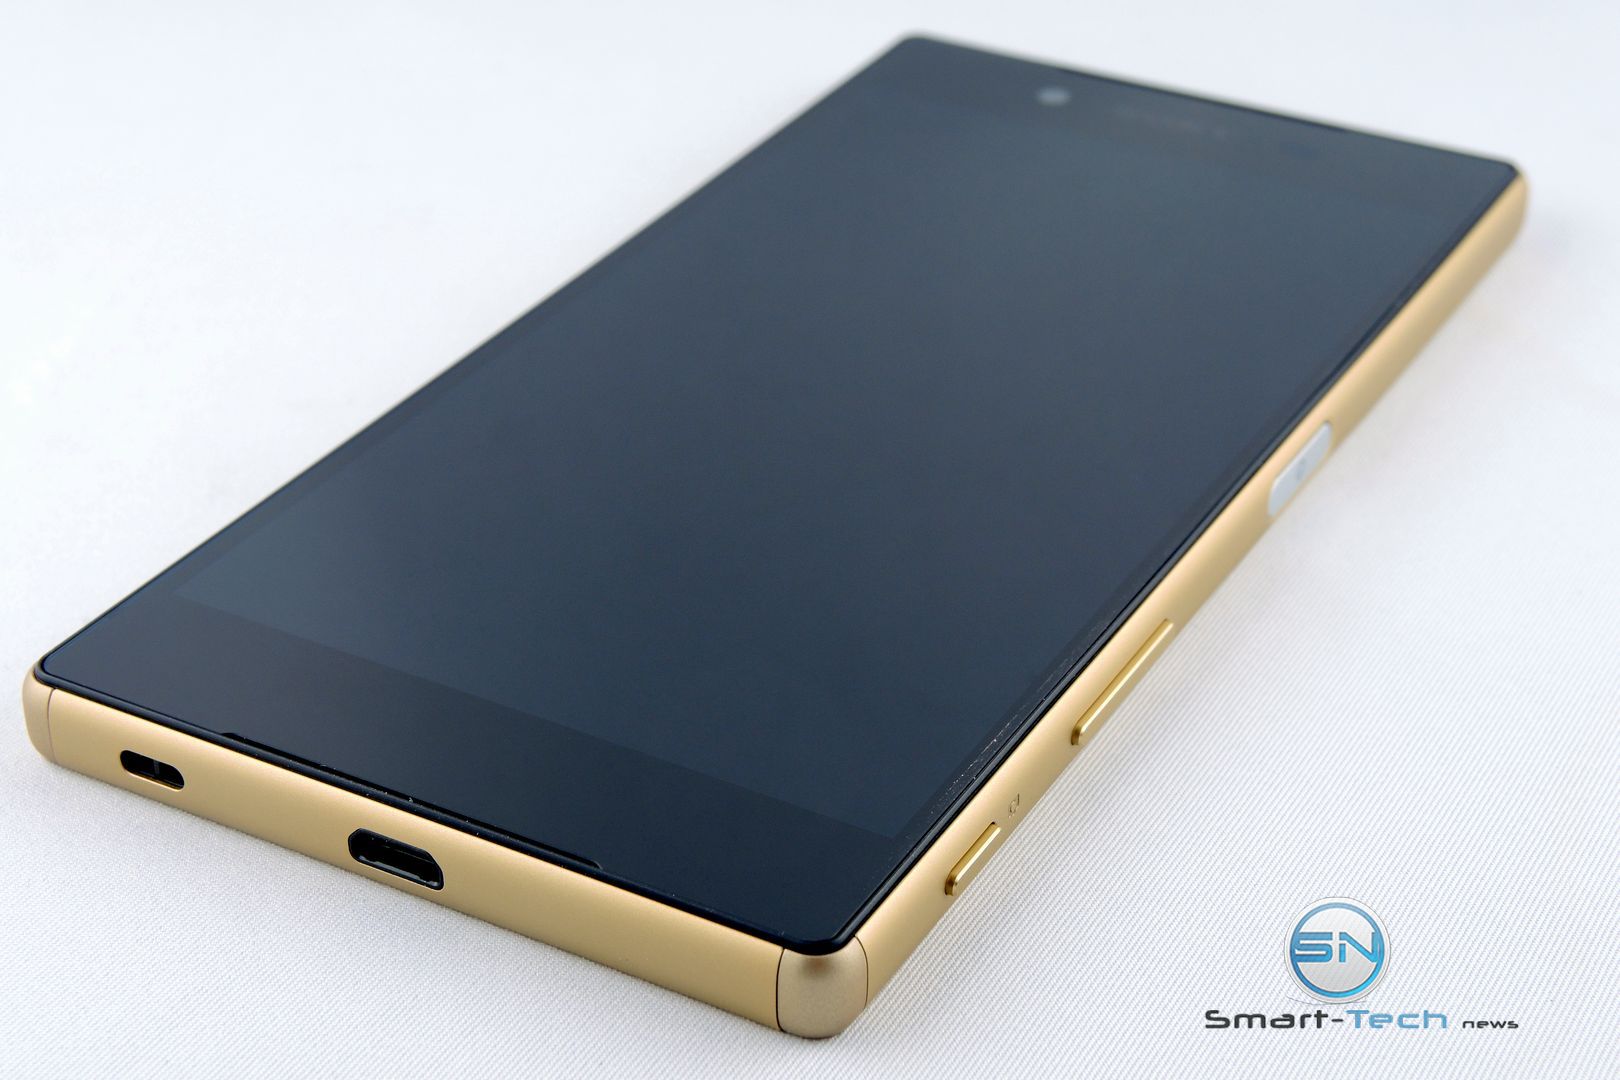 das Sony Xperia Z5 gold - SmartTechNews